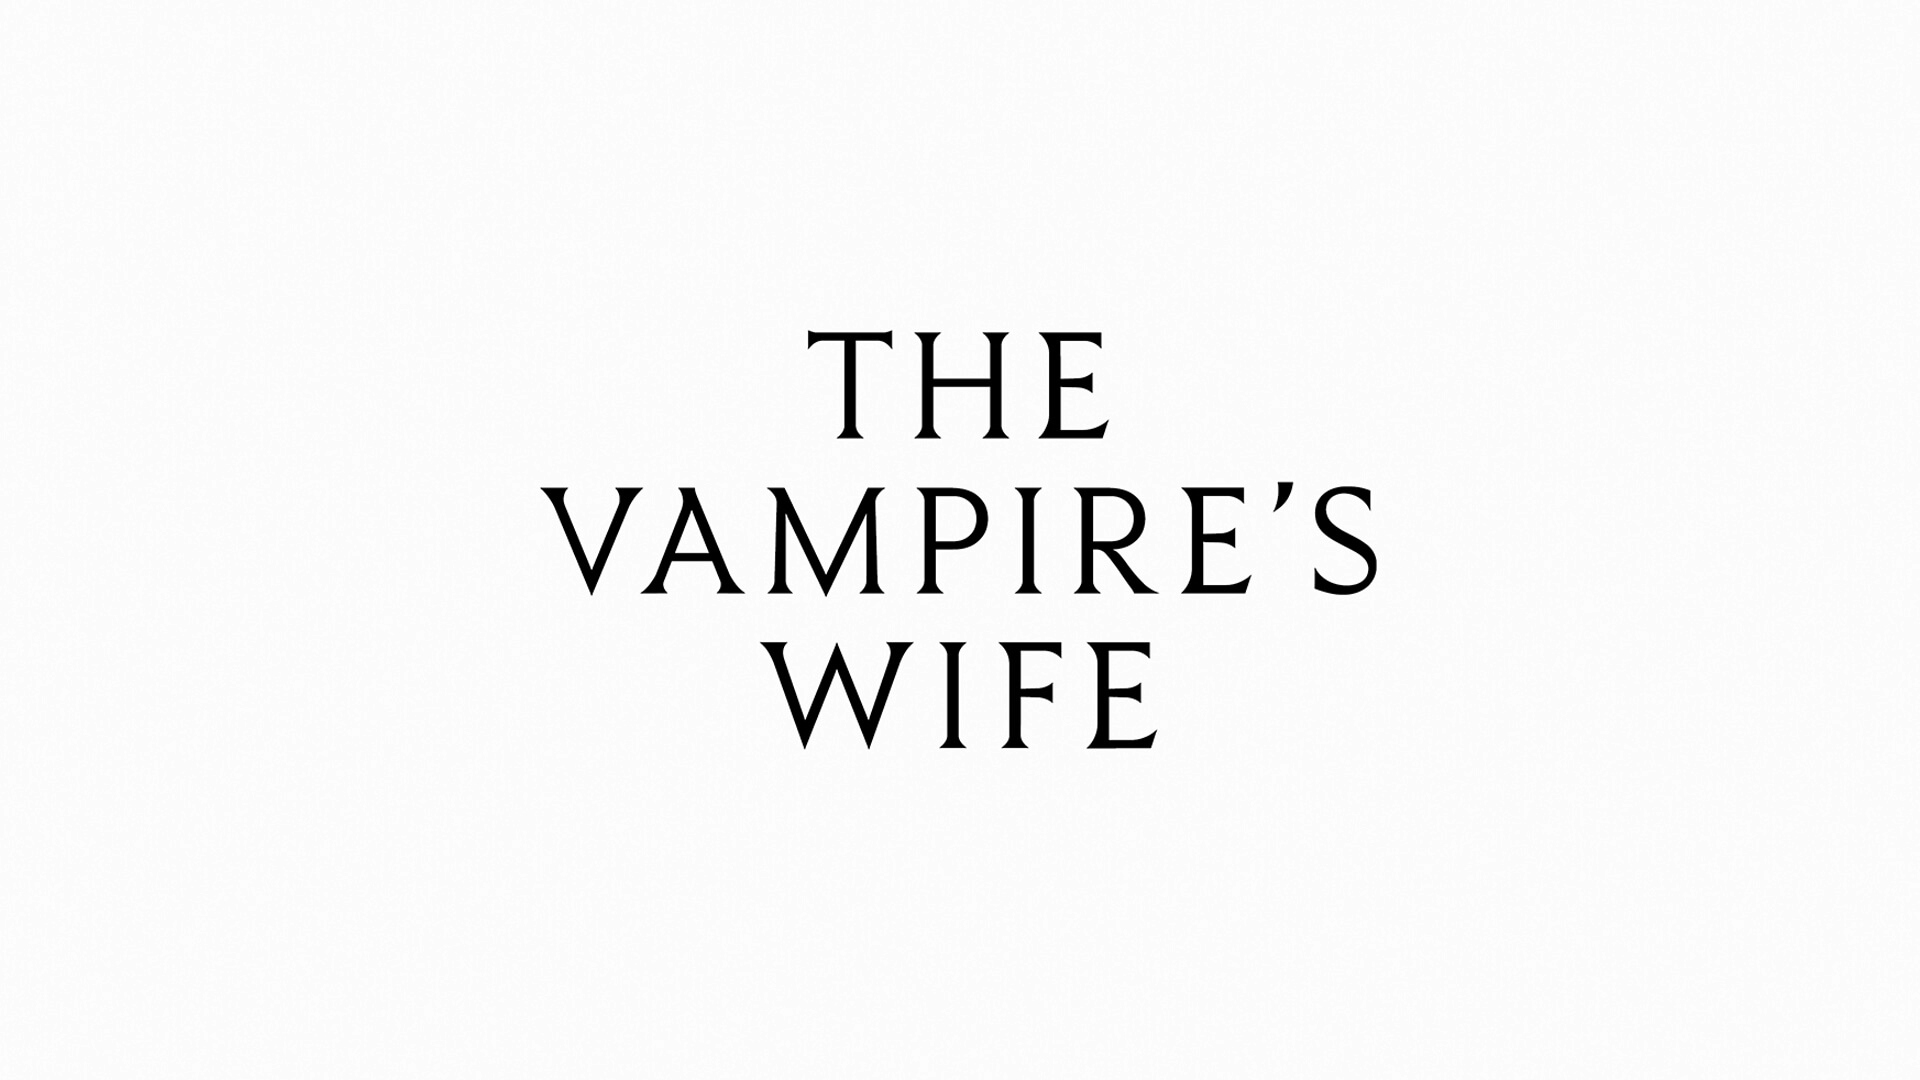 THE VAMPIRE'S WIFE